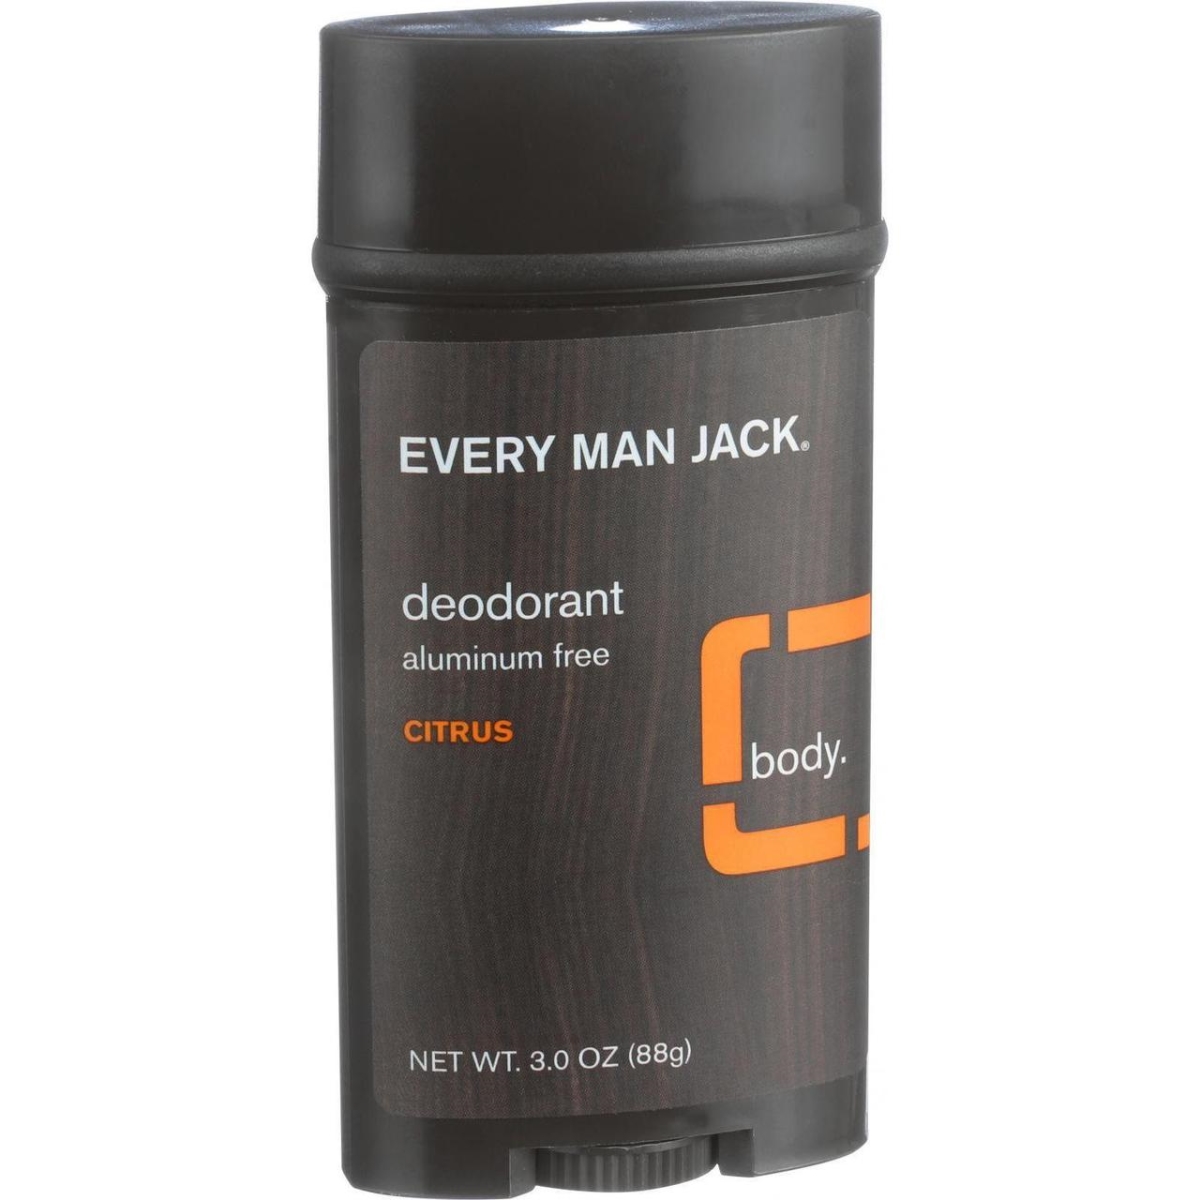 3 Oz Aluminum Free Body Deodorant, Citrus